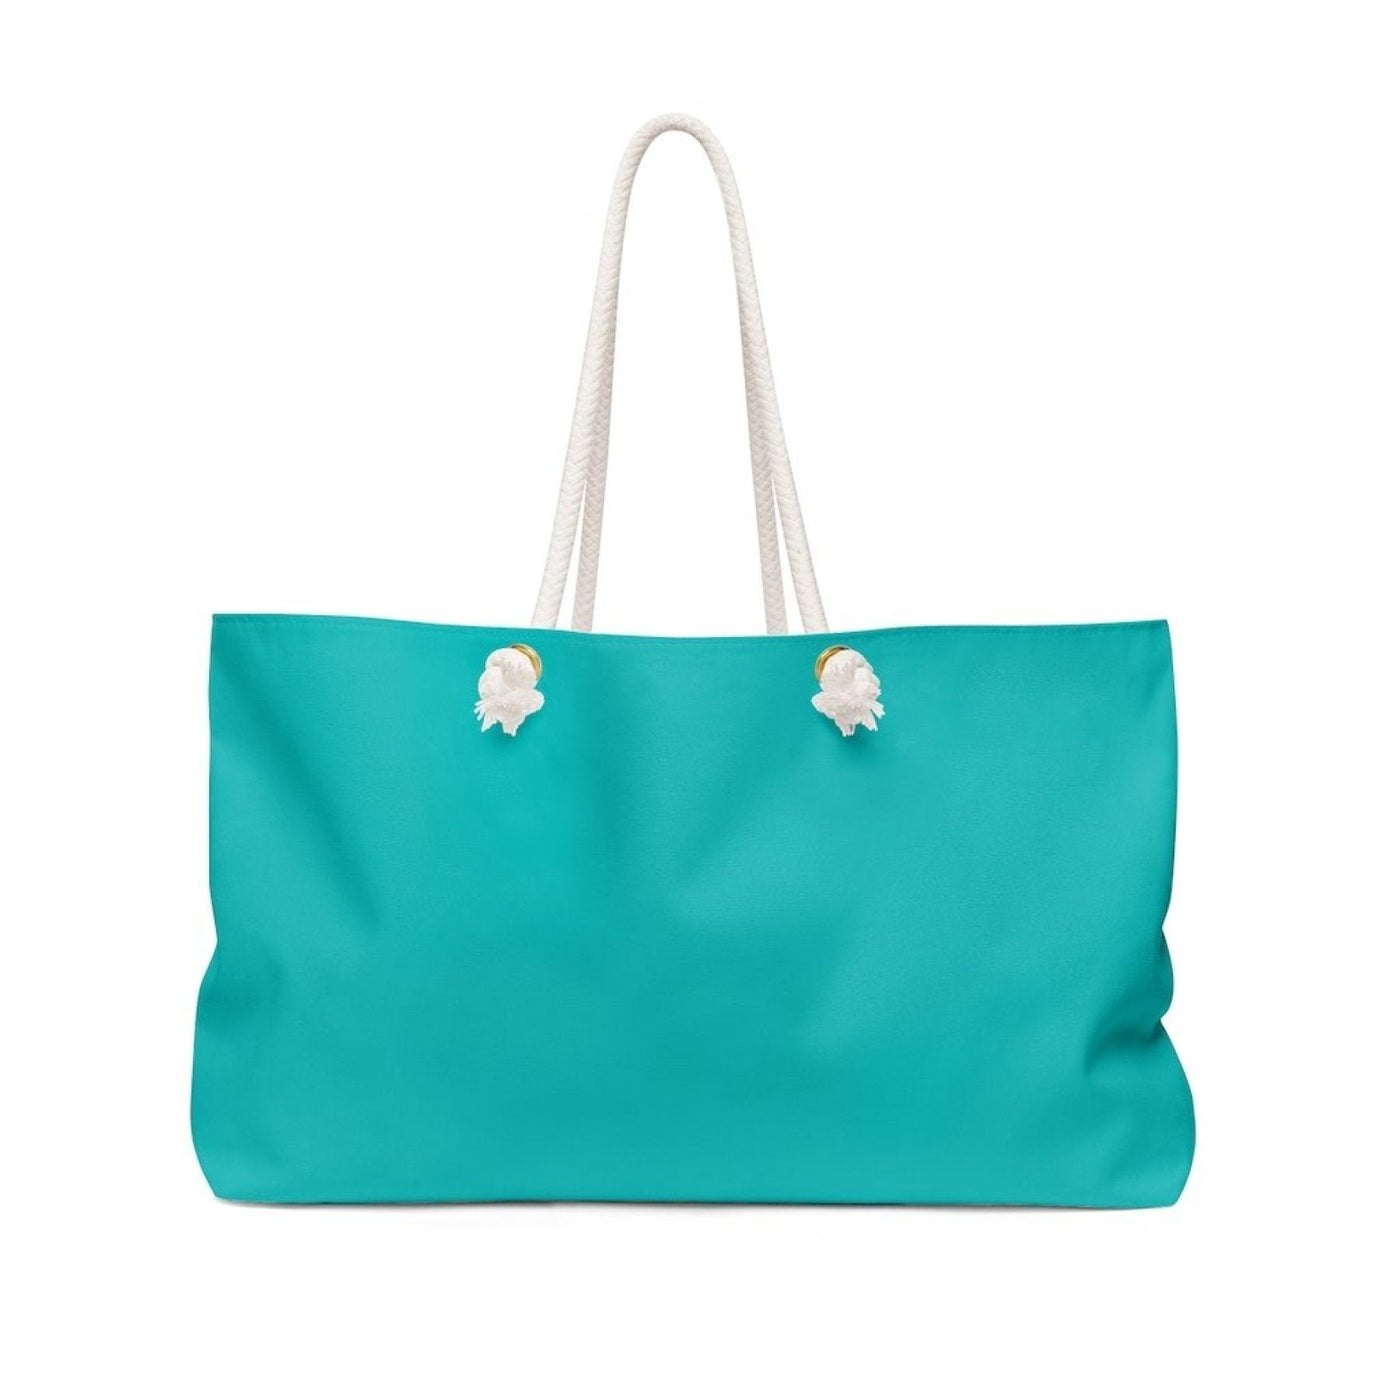 Teal Green Handbag Weekender Tote Bag - Bags | Tote Bags | Weekender